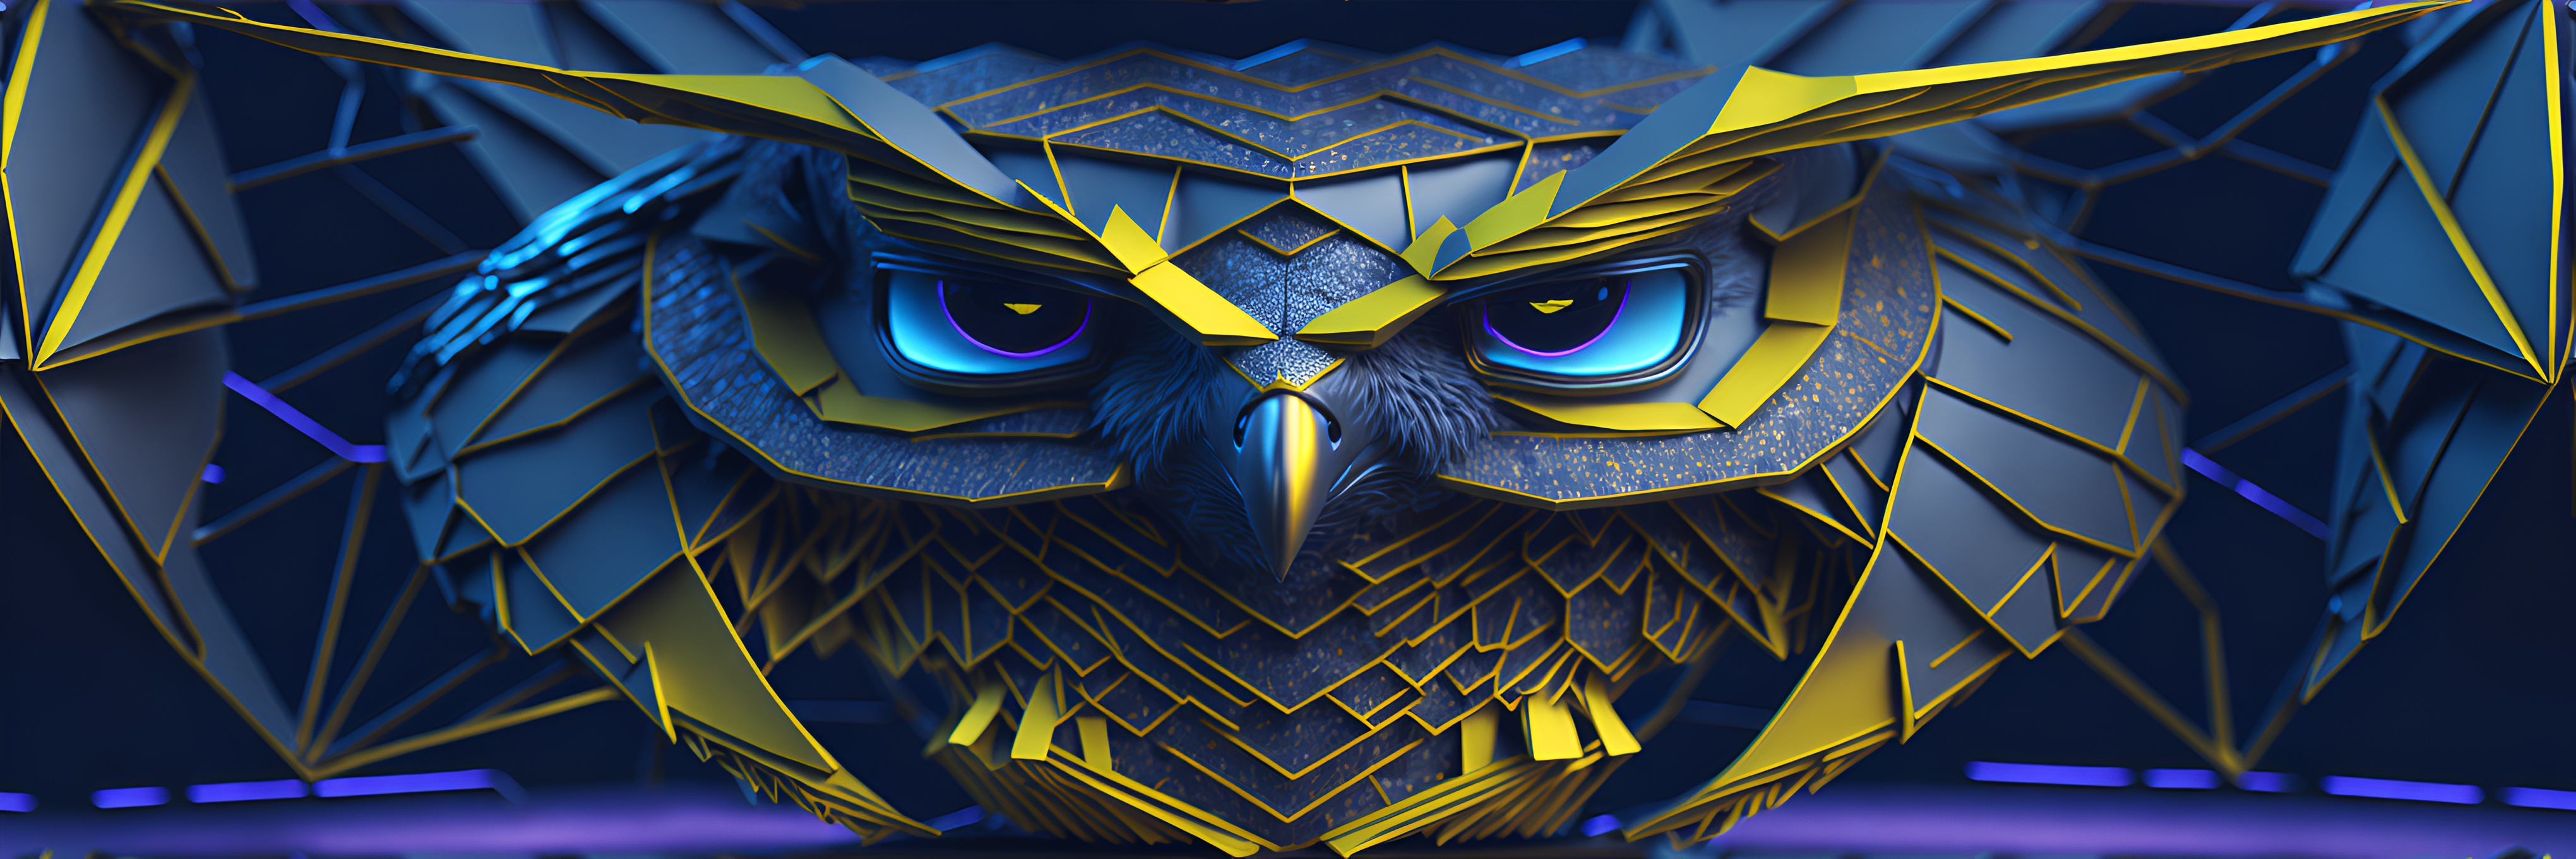 Owl-AI-Art bannière